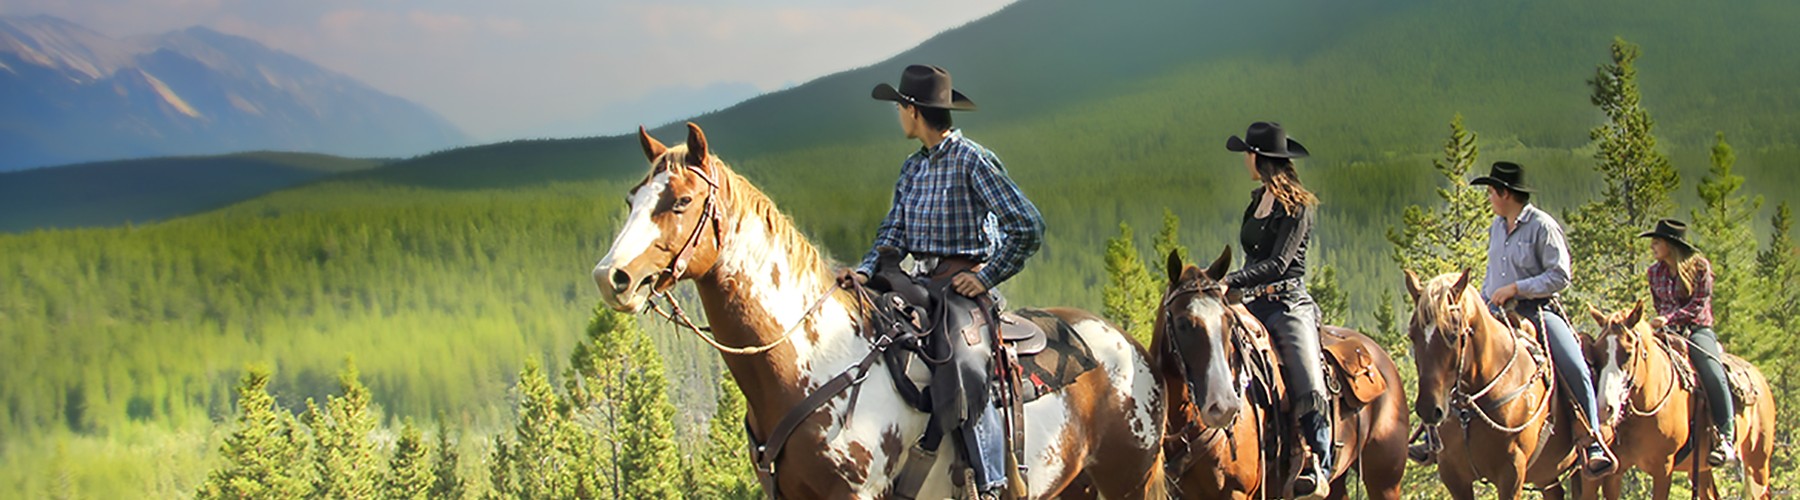 horseback riders enjoy a beautiful viewpoint